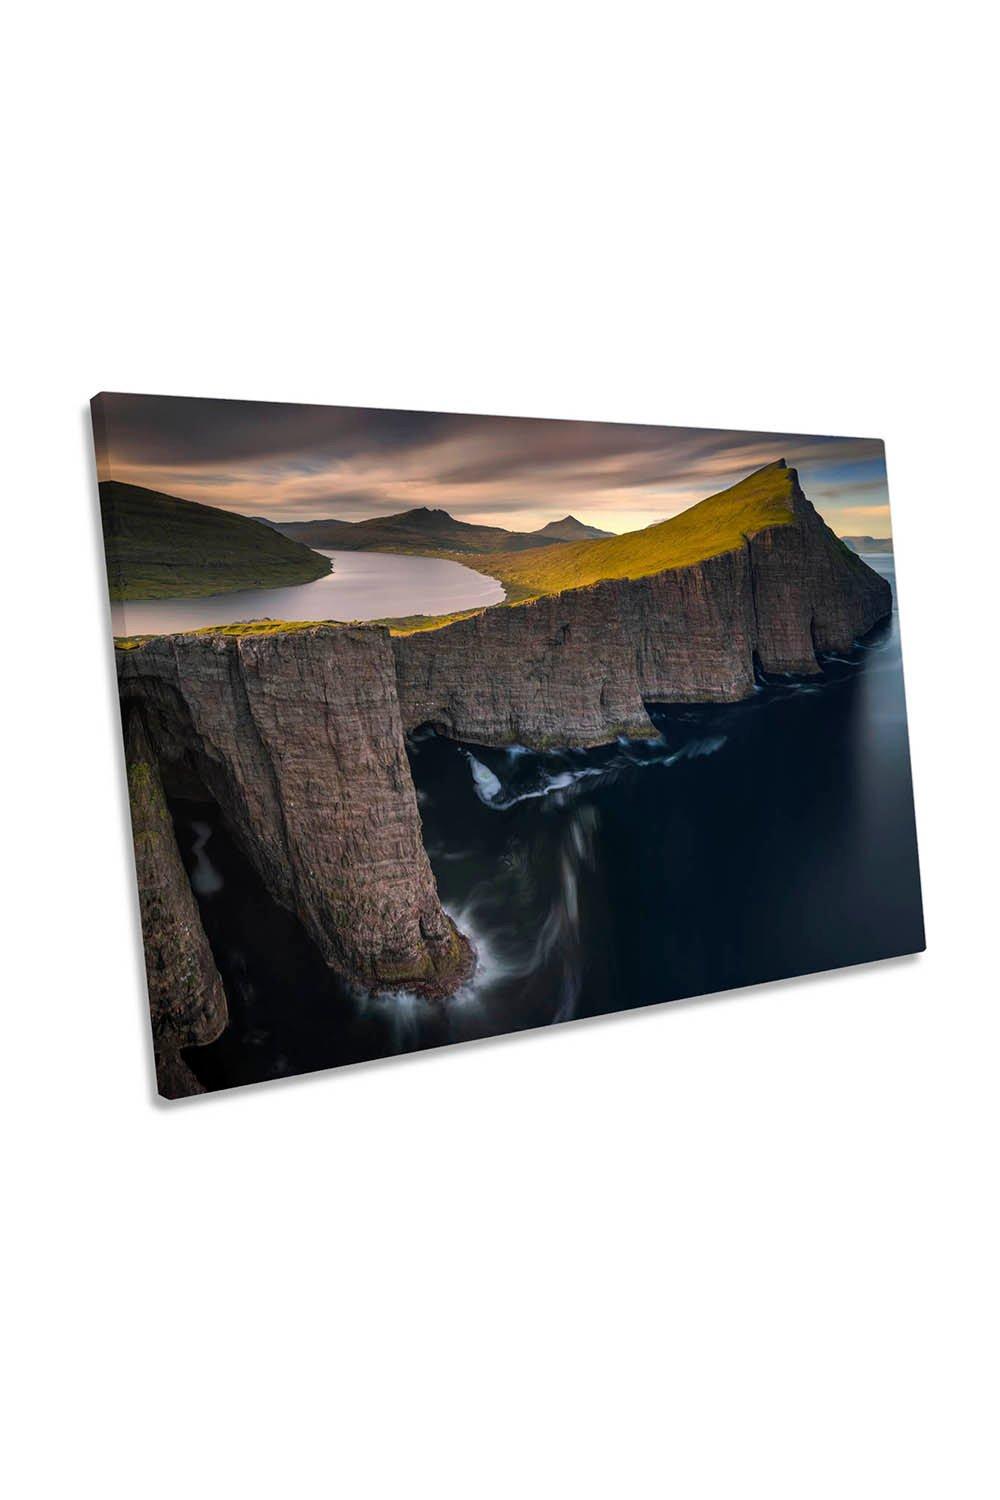 Sorvagsvatn Faroe Sunset Cliffs Canvas Wall Art Picture Print